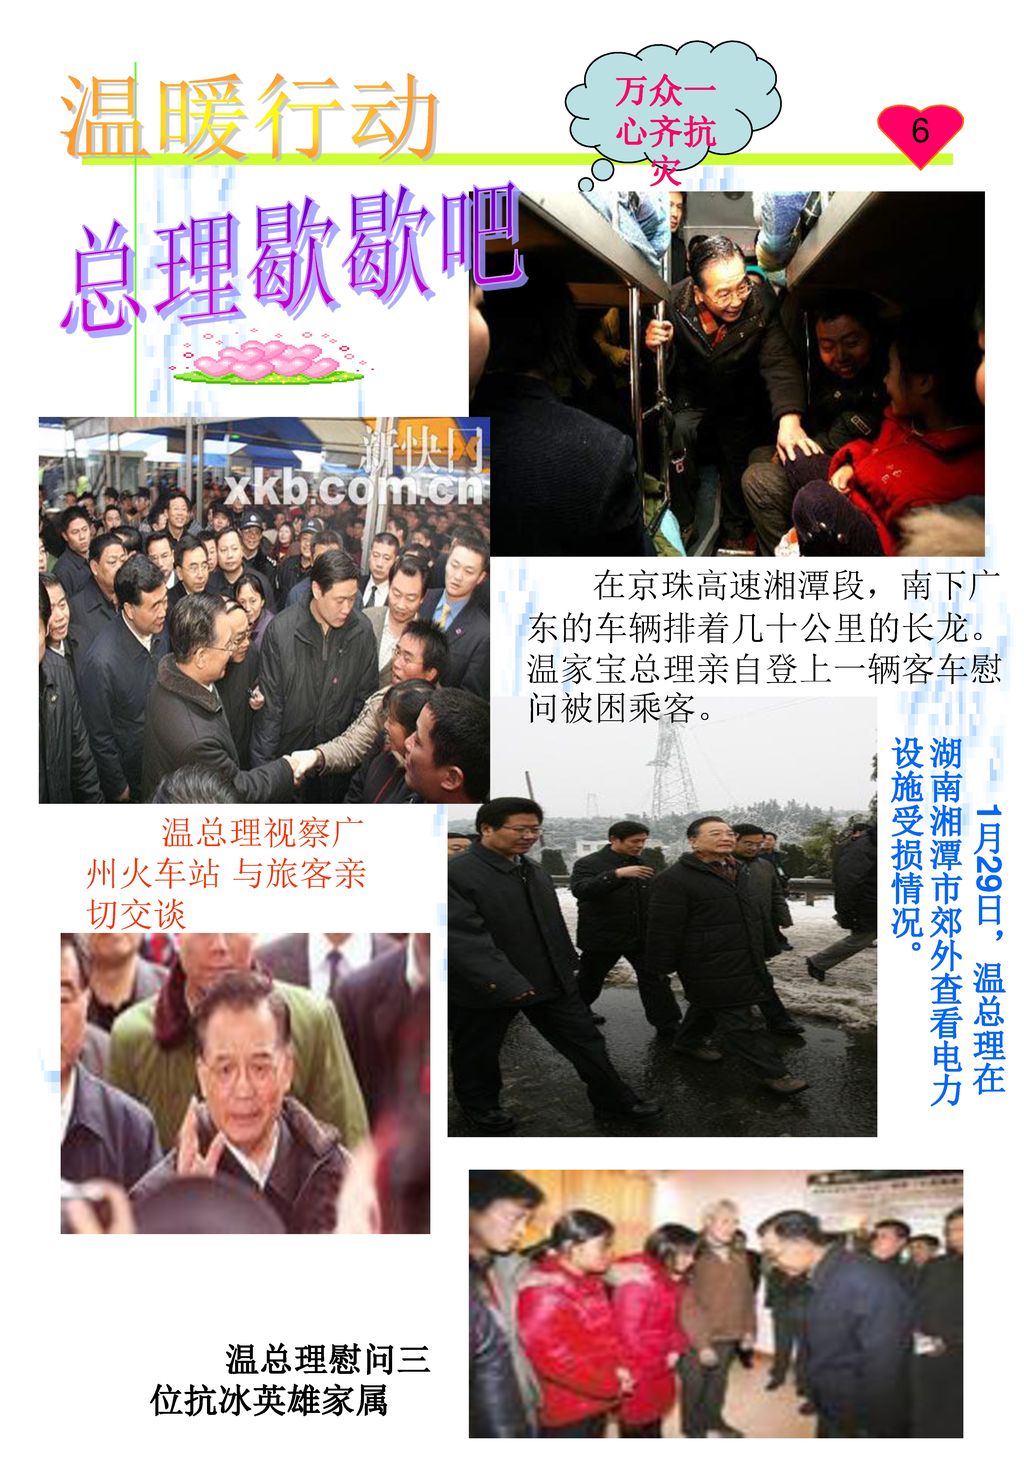 总理歇歇吧 温暖行动 万众一心齐抗灾 6 在京珠高速湘潭段，南下广东的车辆排着几十公里的长龙。温家宝总理亲自登上一辆客车慰问被困乘客。